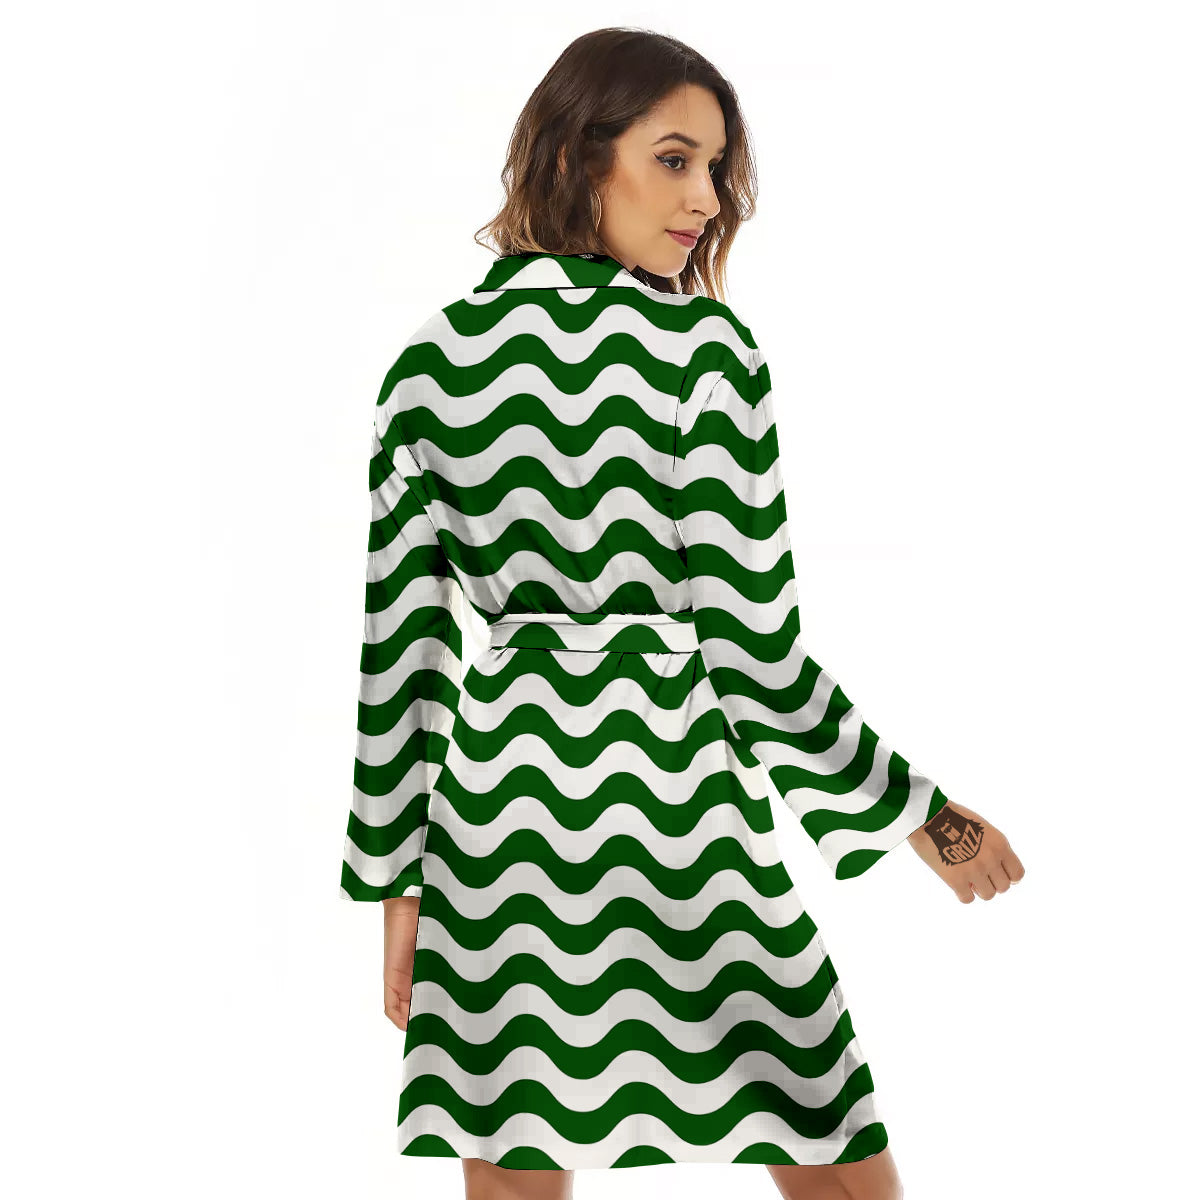 Dark Green Wave Striped Print Women's Robe-grizzshop